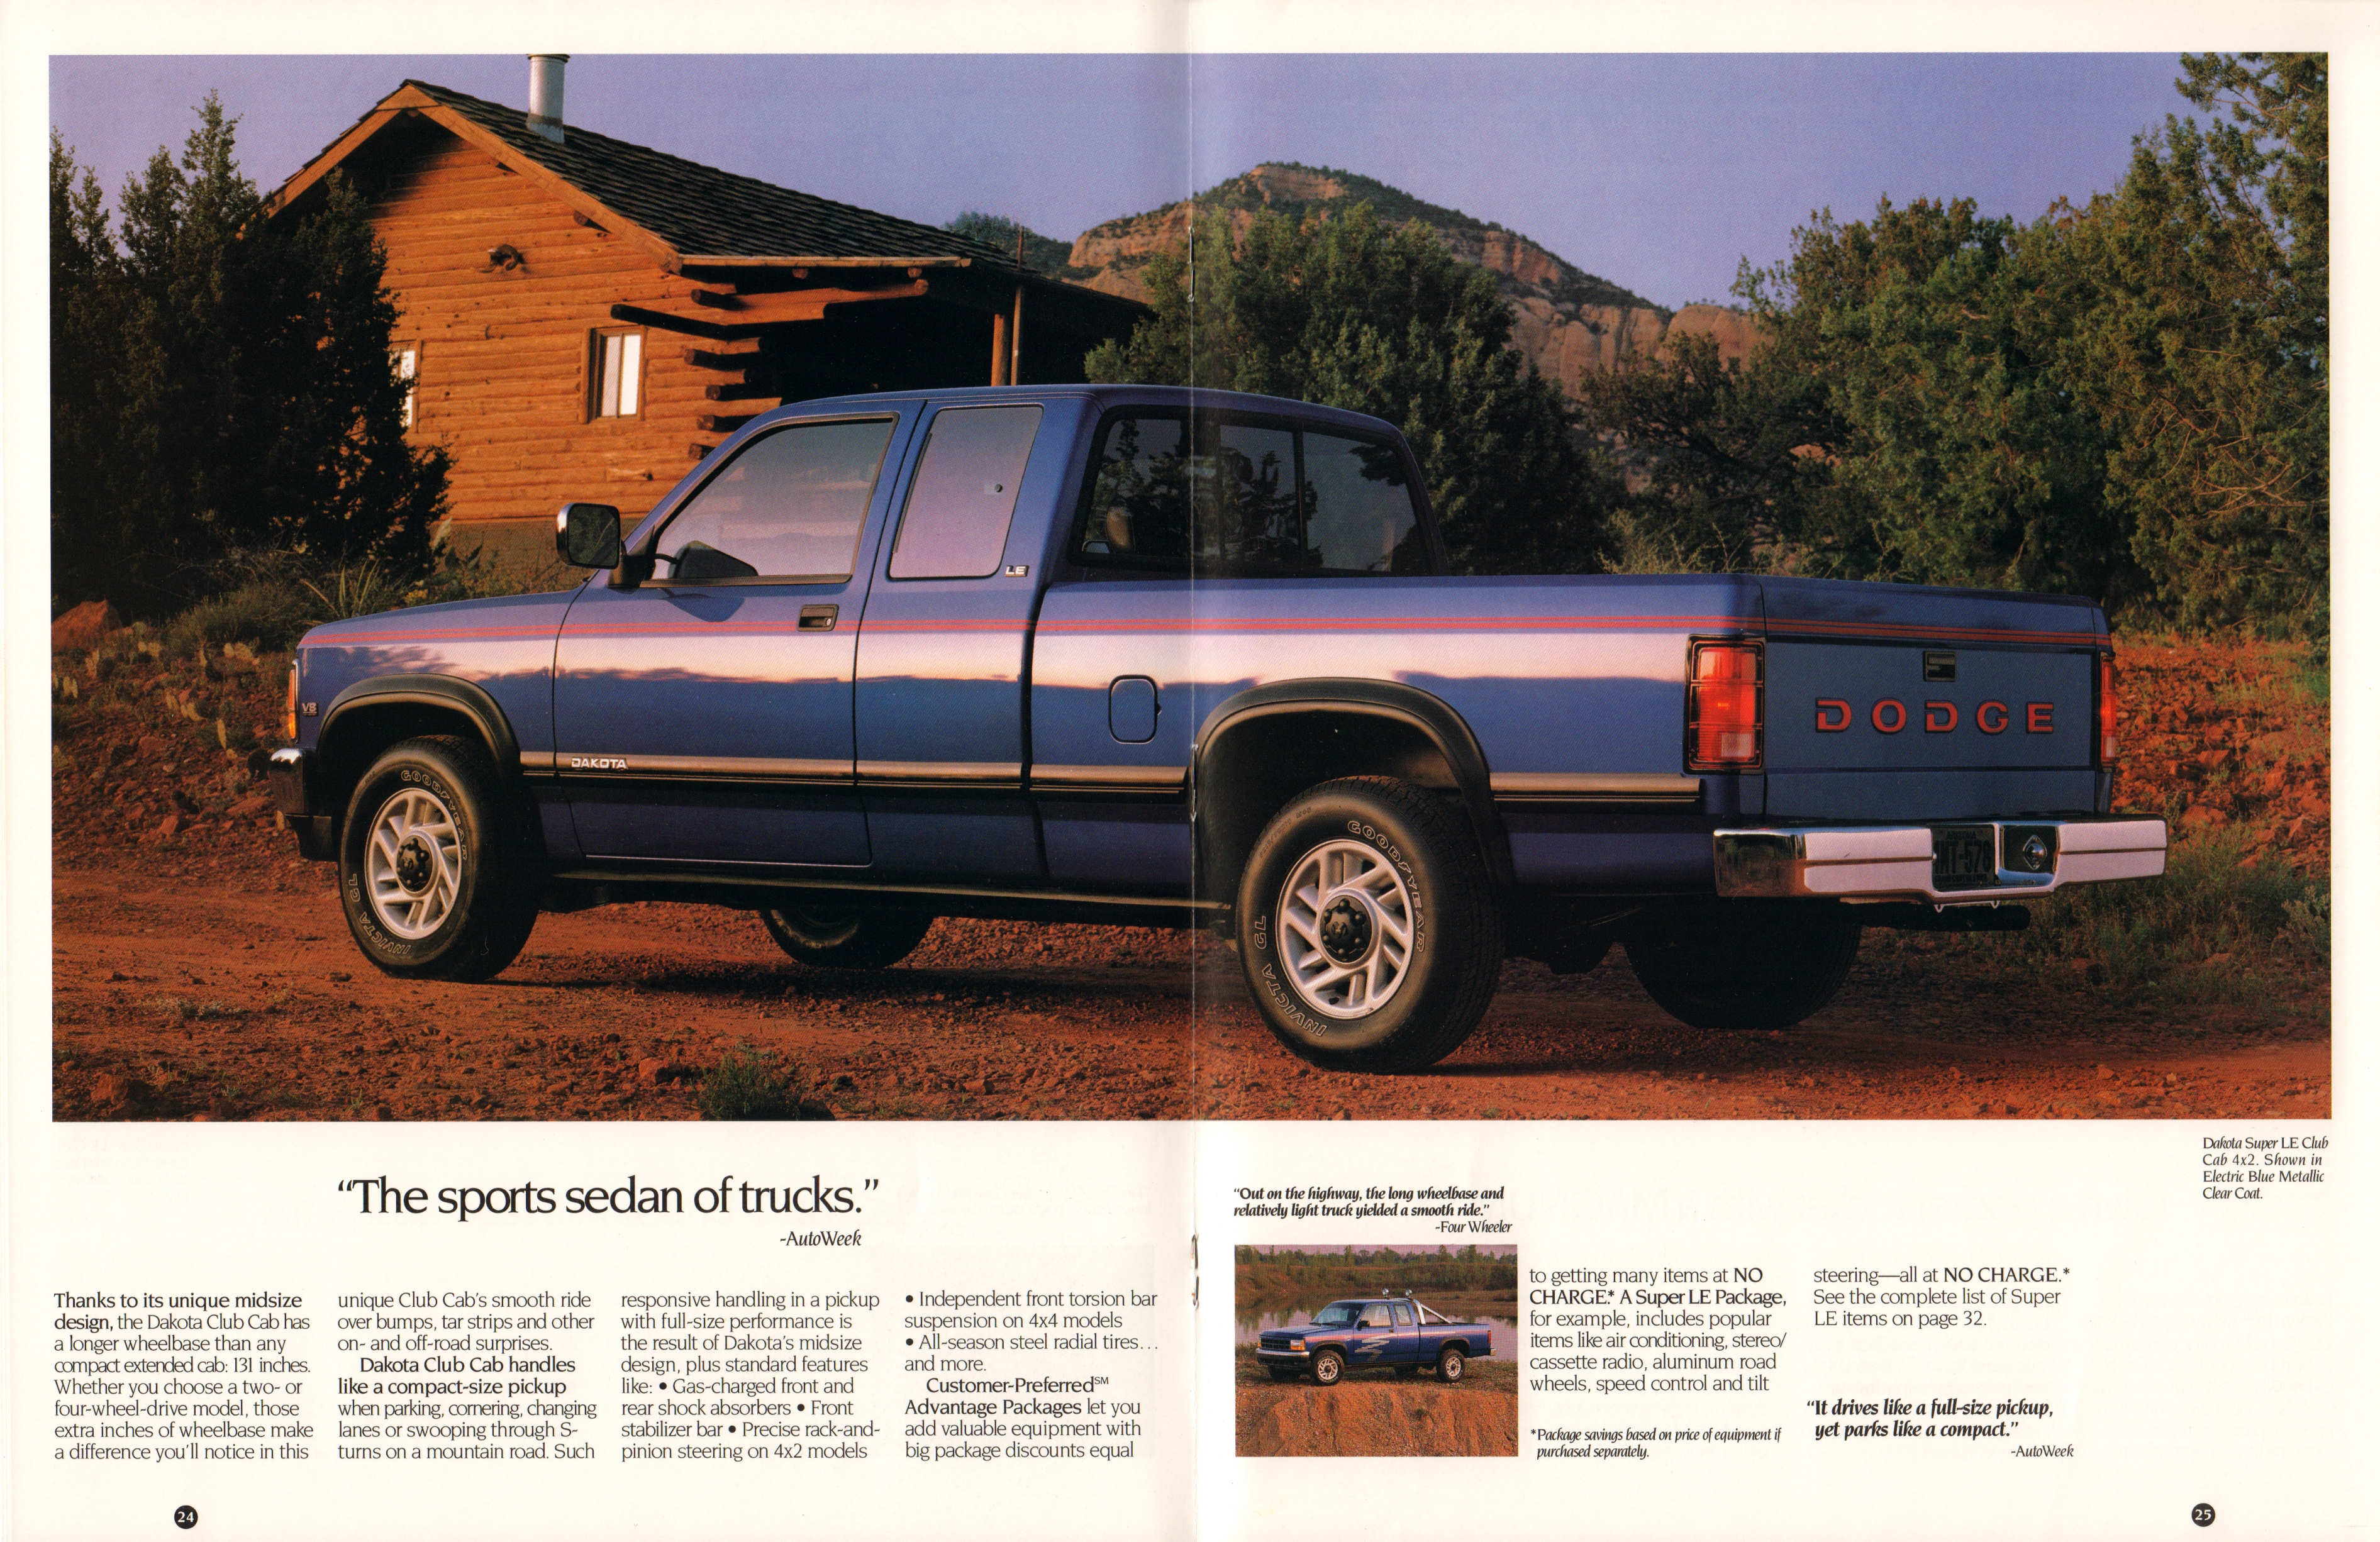 1993_Dodge_Pickup_Prestige-24-25